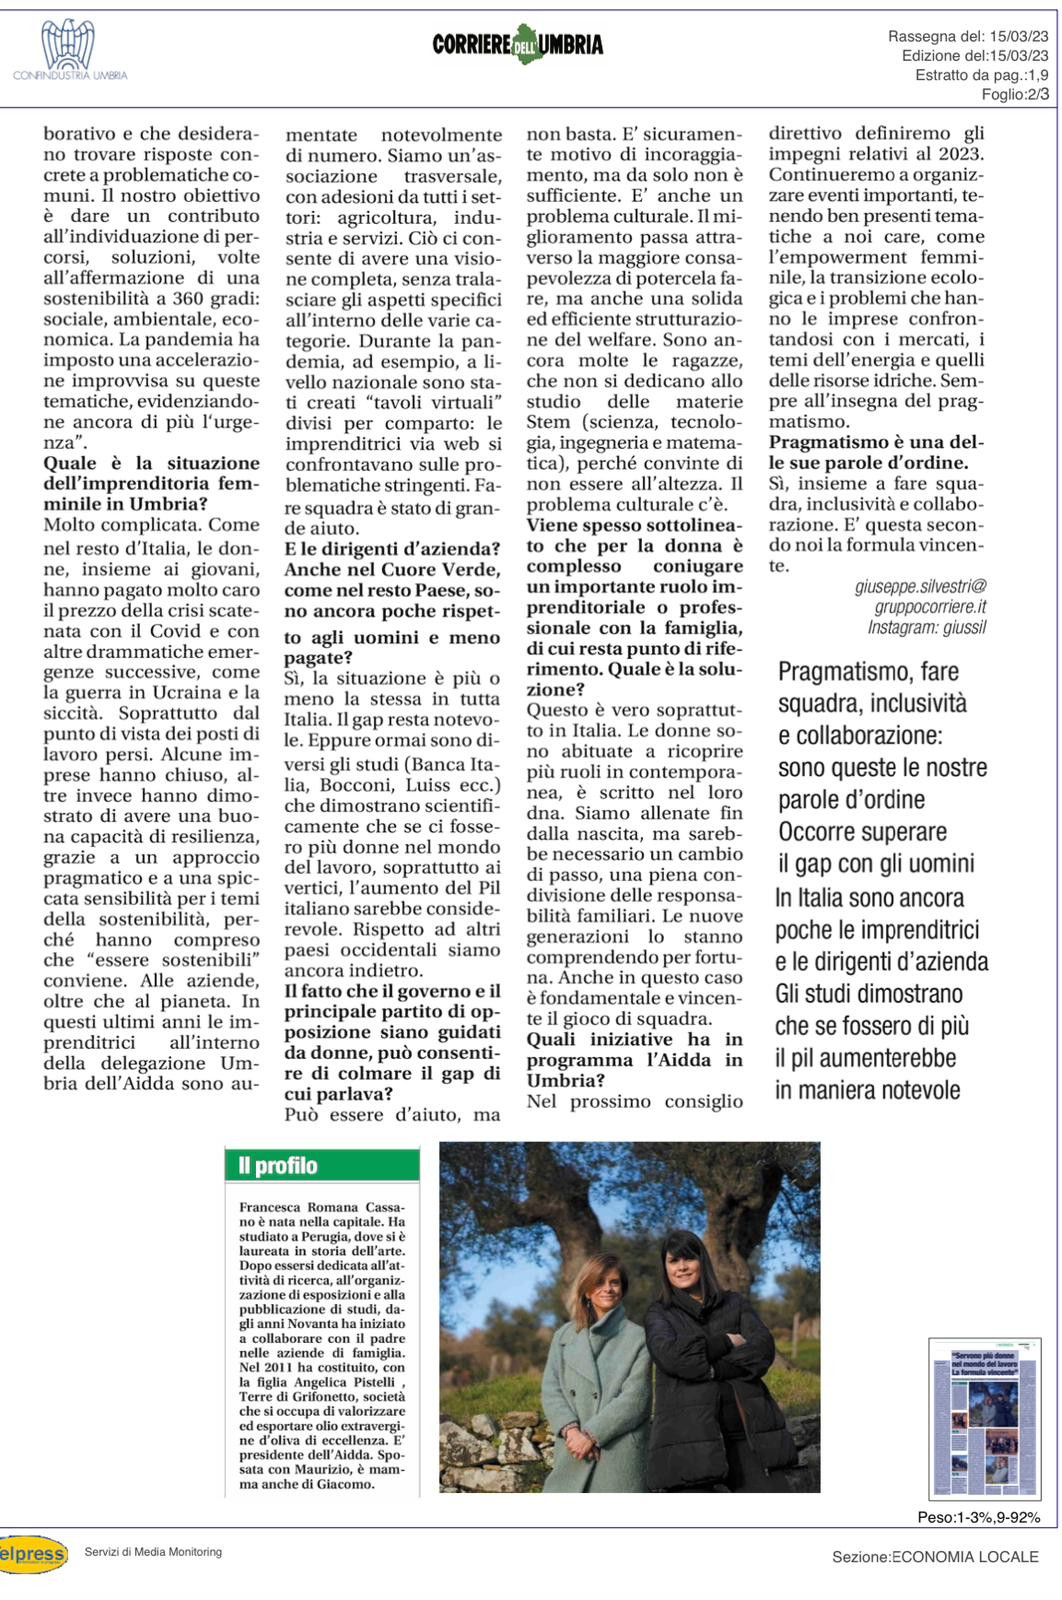 Articolo Umbria 2.jpg